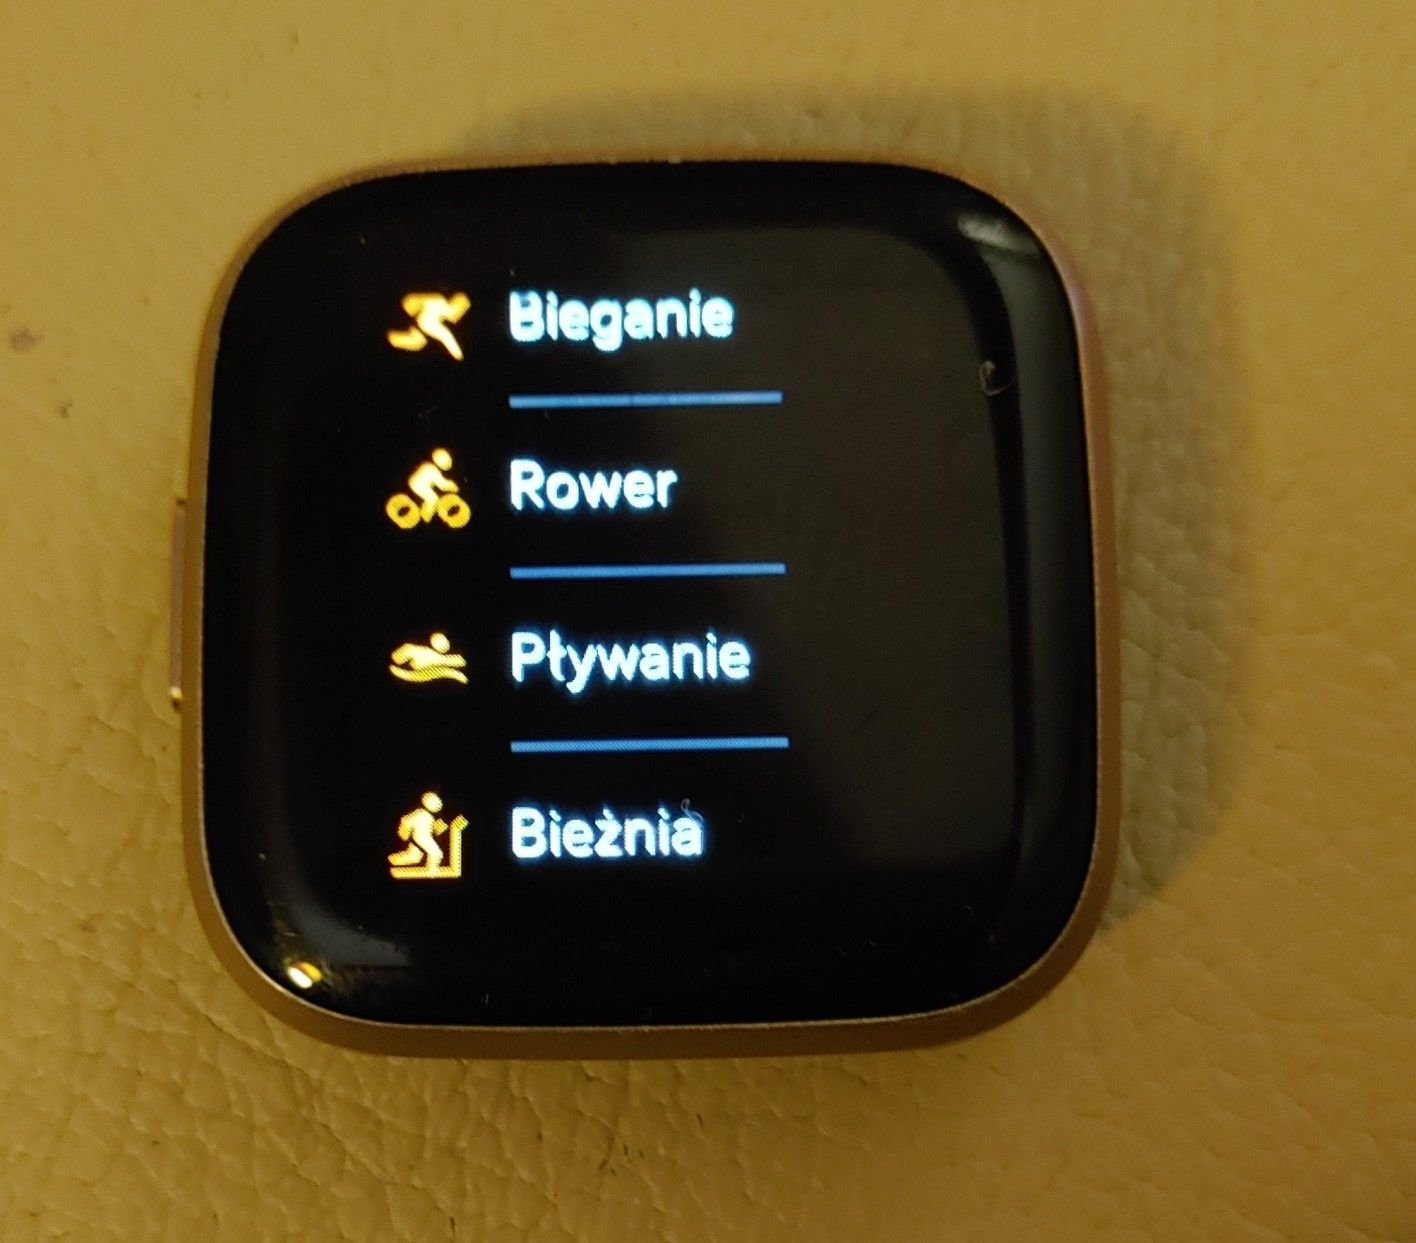 Fitbit Versa2 tętno, płatności zbliżeniowe ,jakość snu.